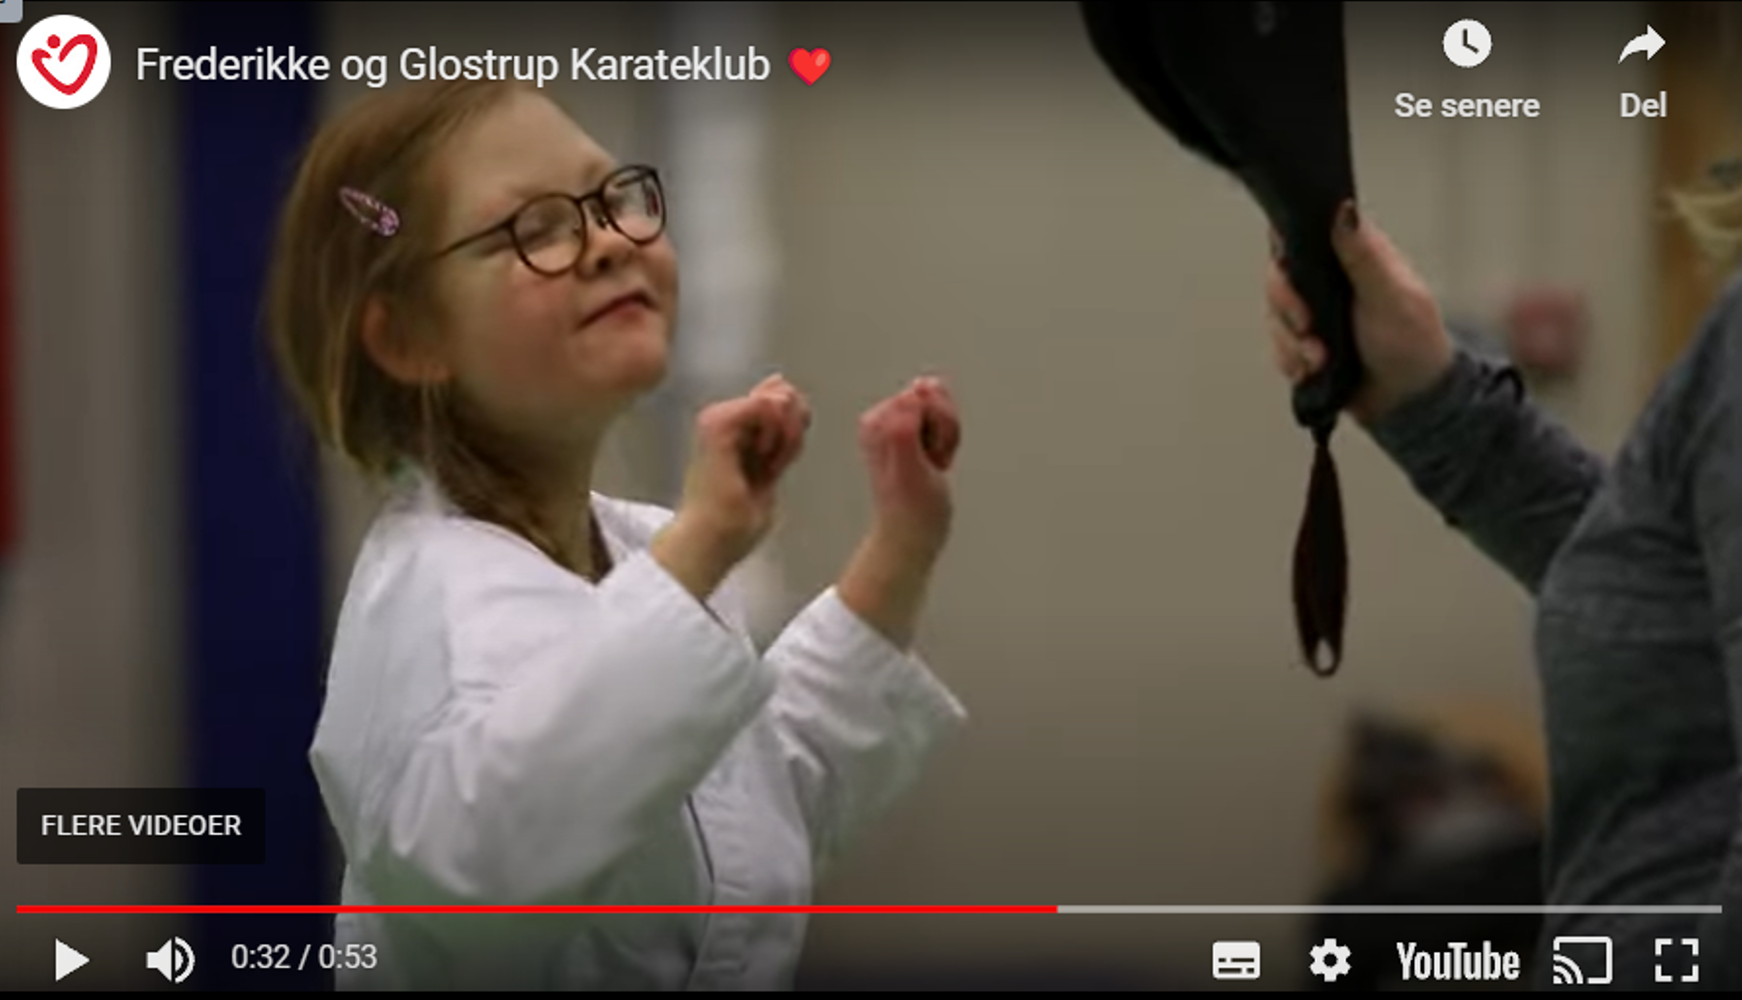 Frederikke og Glostrup Karate